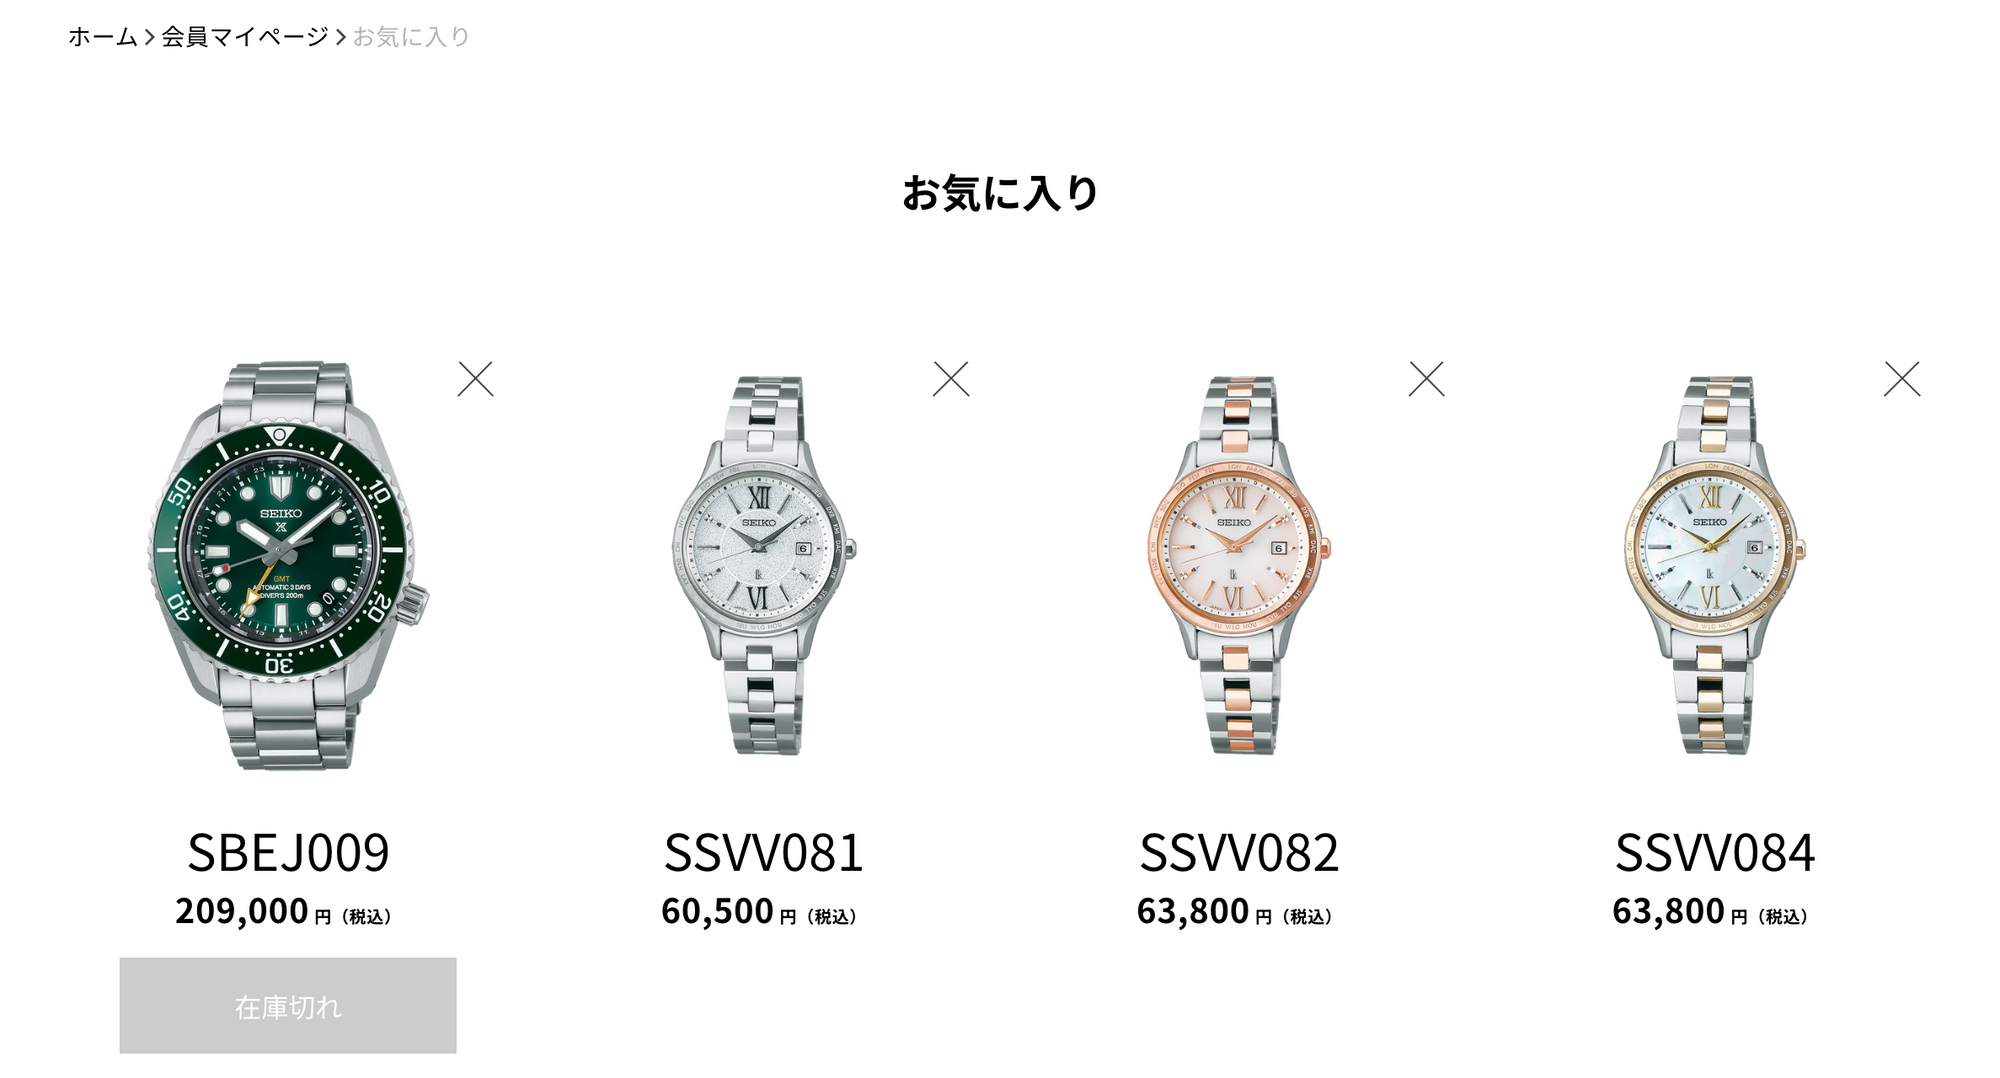 Seiko online store